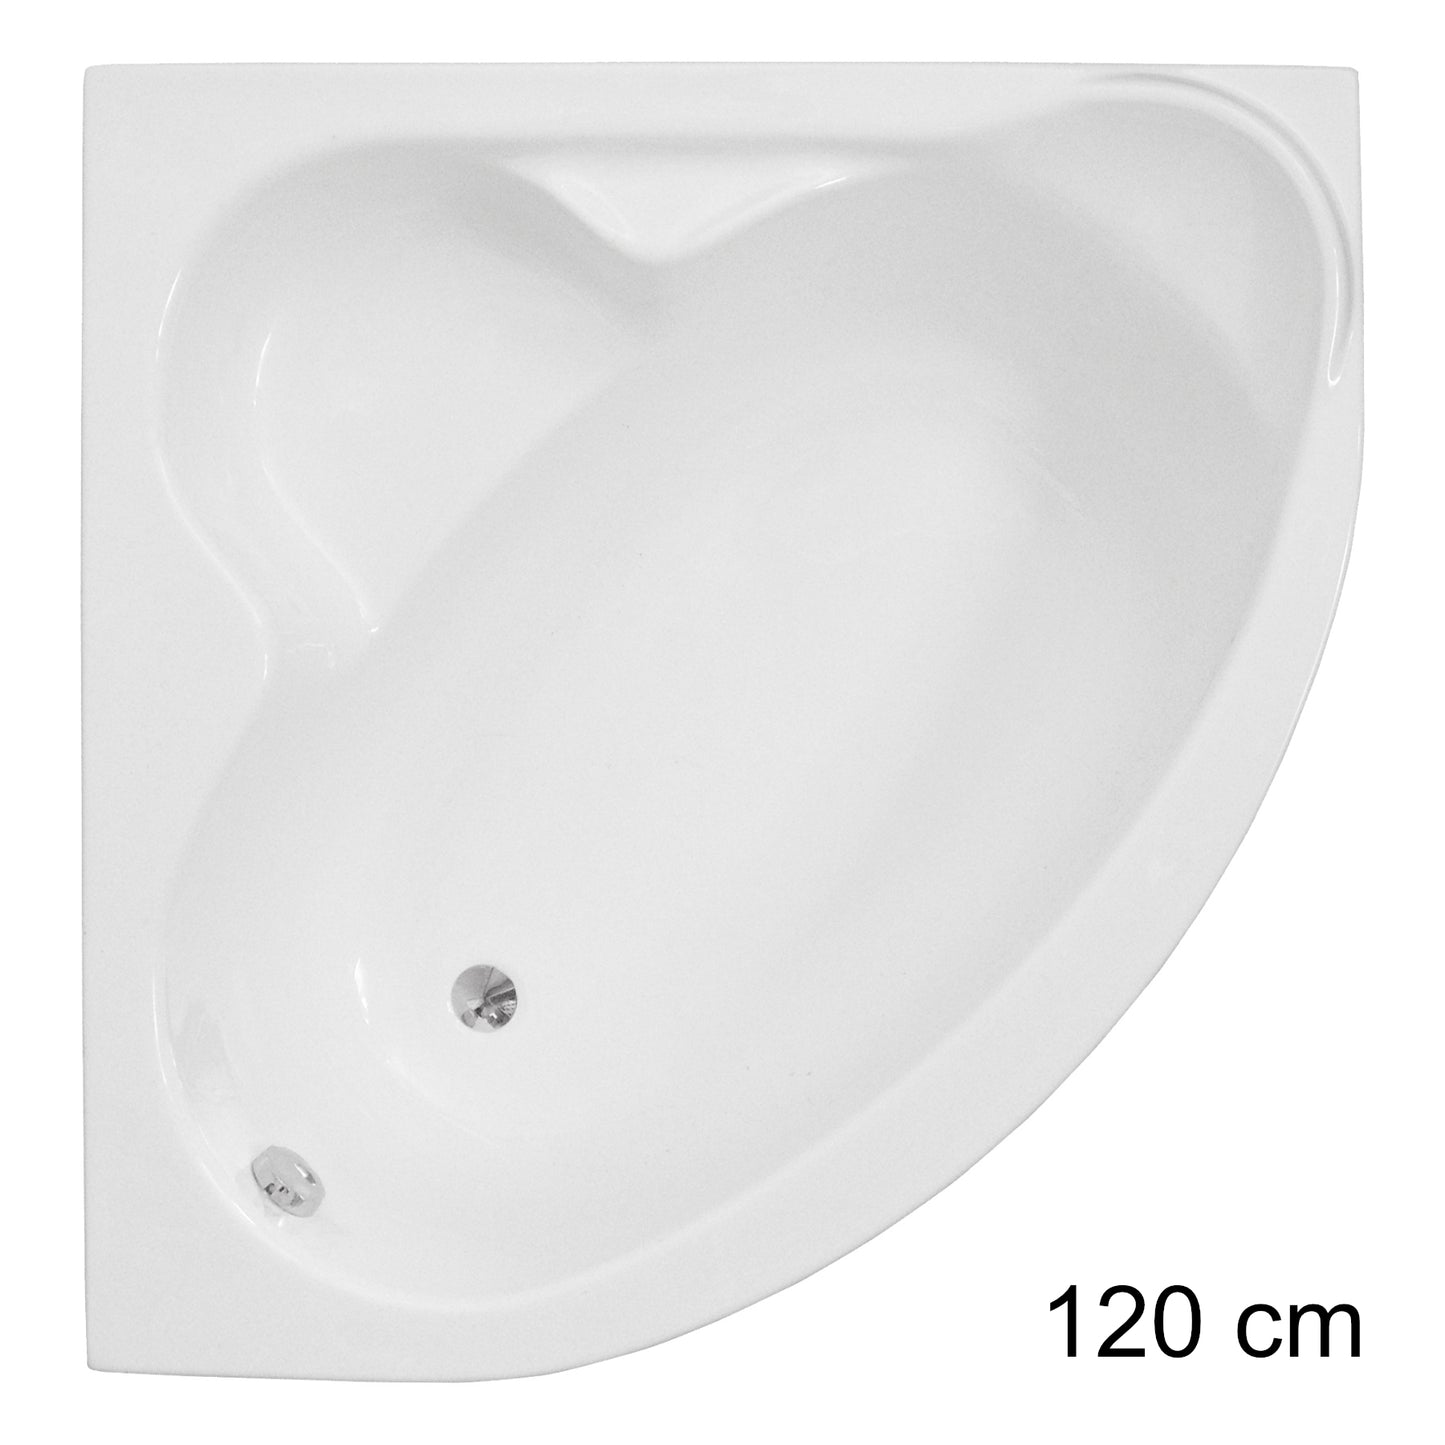 Acrylic symmetrical corner bathtub STANDARD